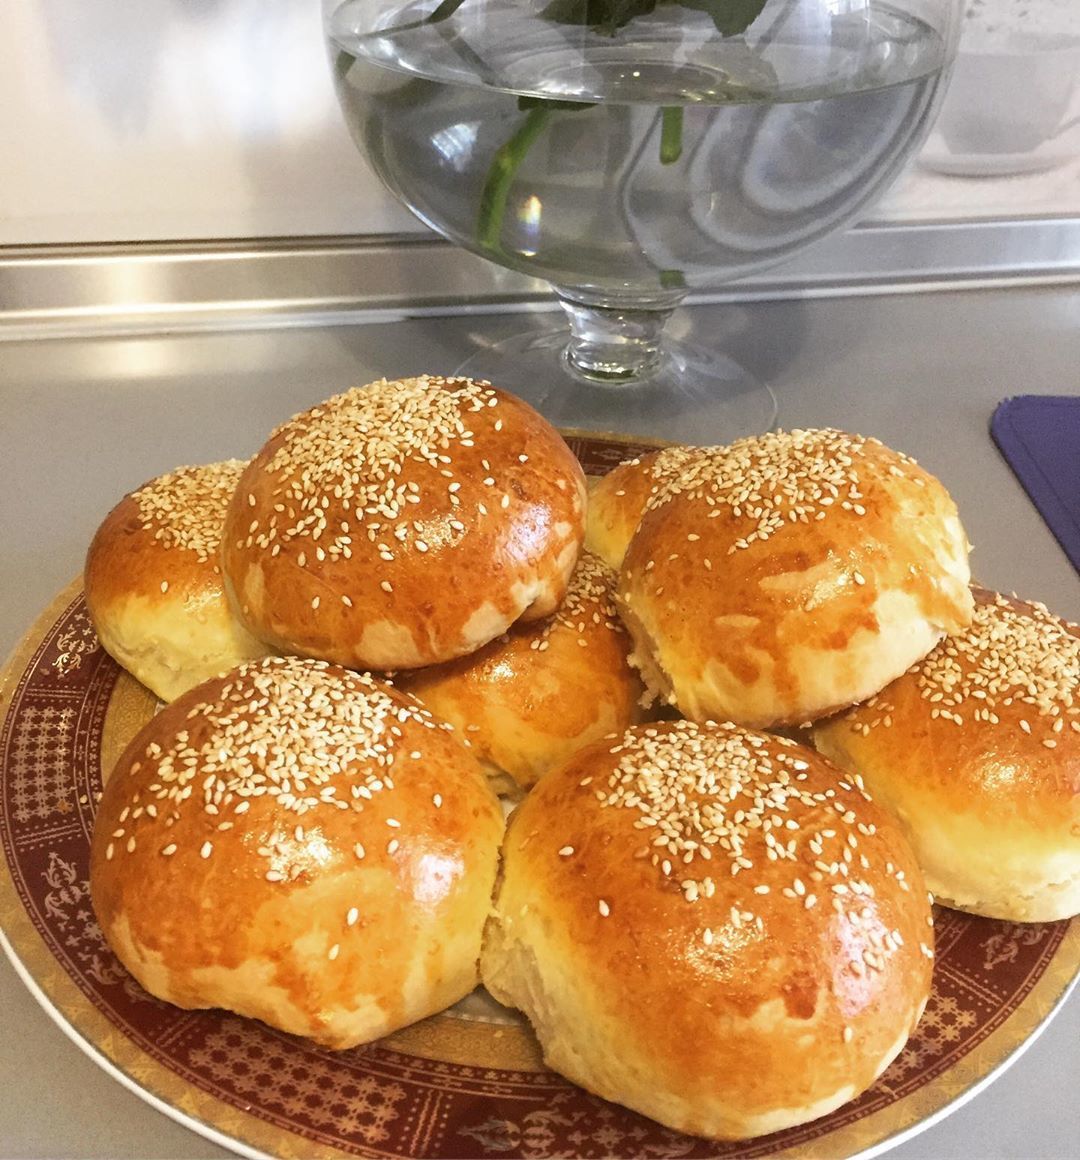 Как приготовить домашний хлеб — рецепт фокаччи от Юлии Высоцкой | #сладкоесолёное №158 (16+)